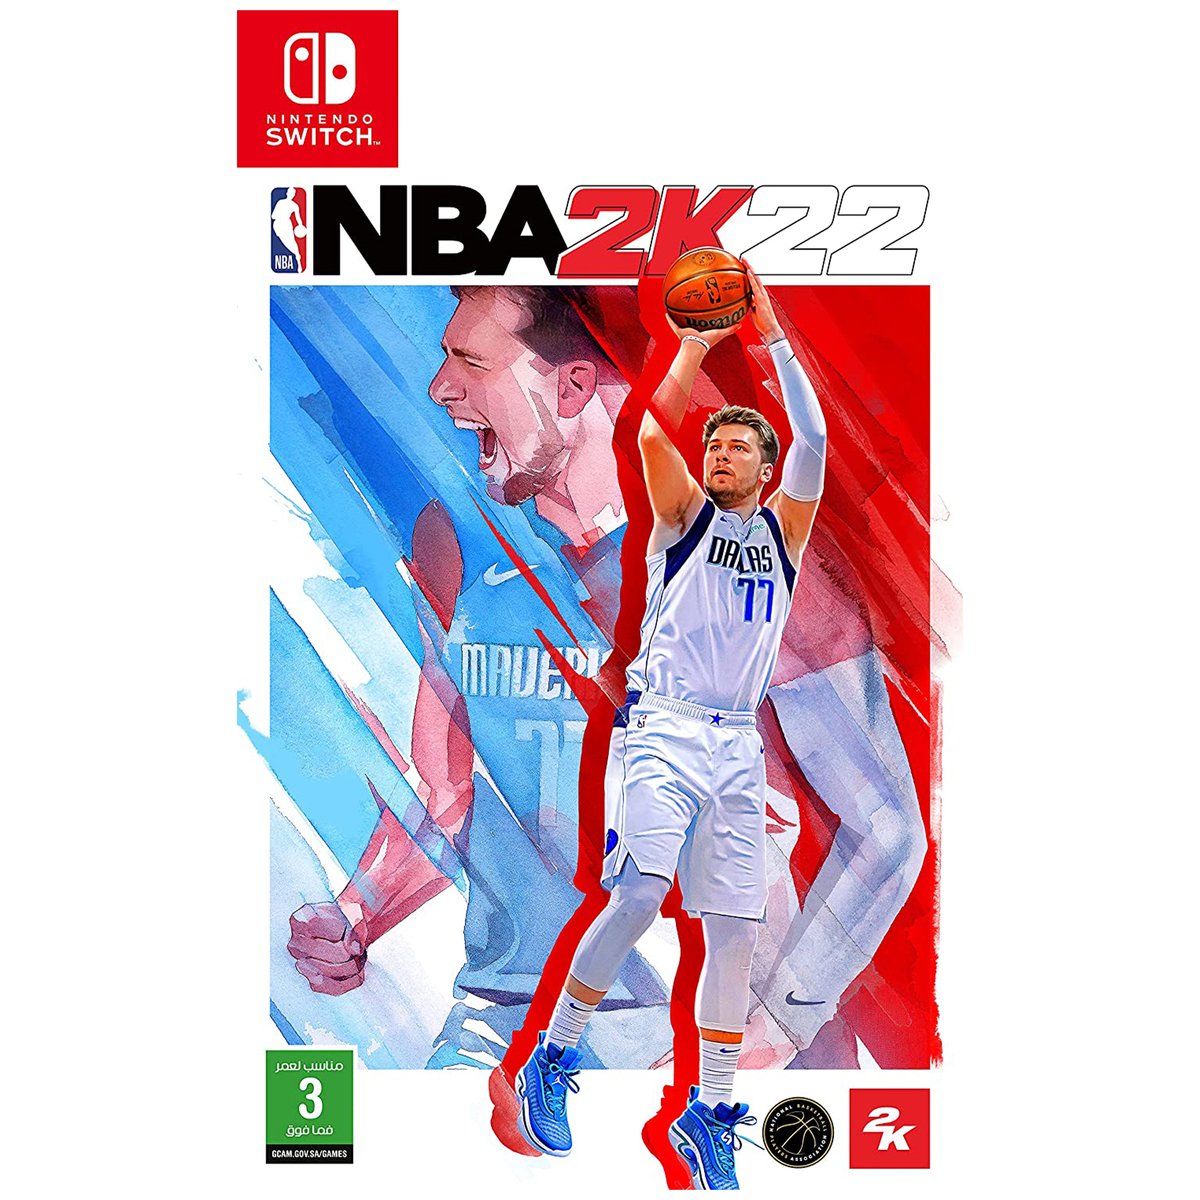 Take 2 Nintendo Switch NBA 2K22